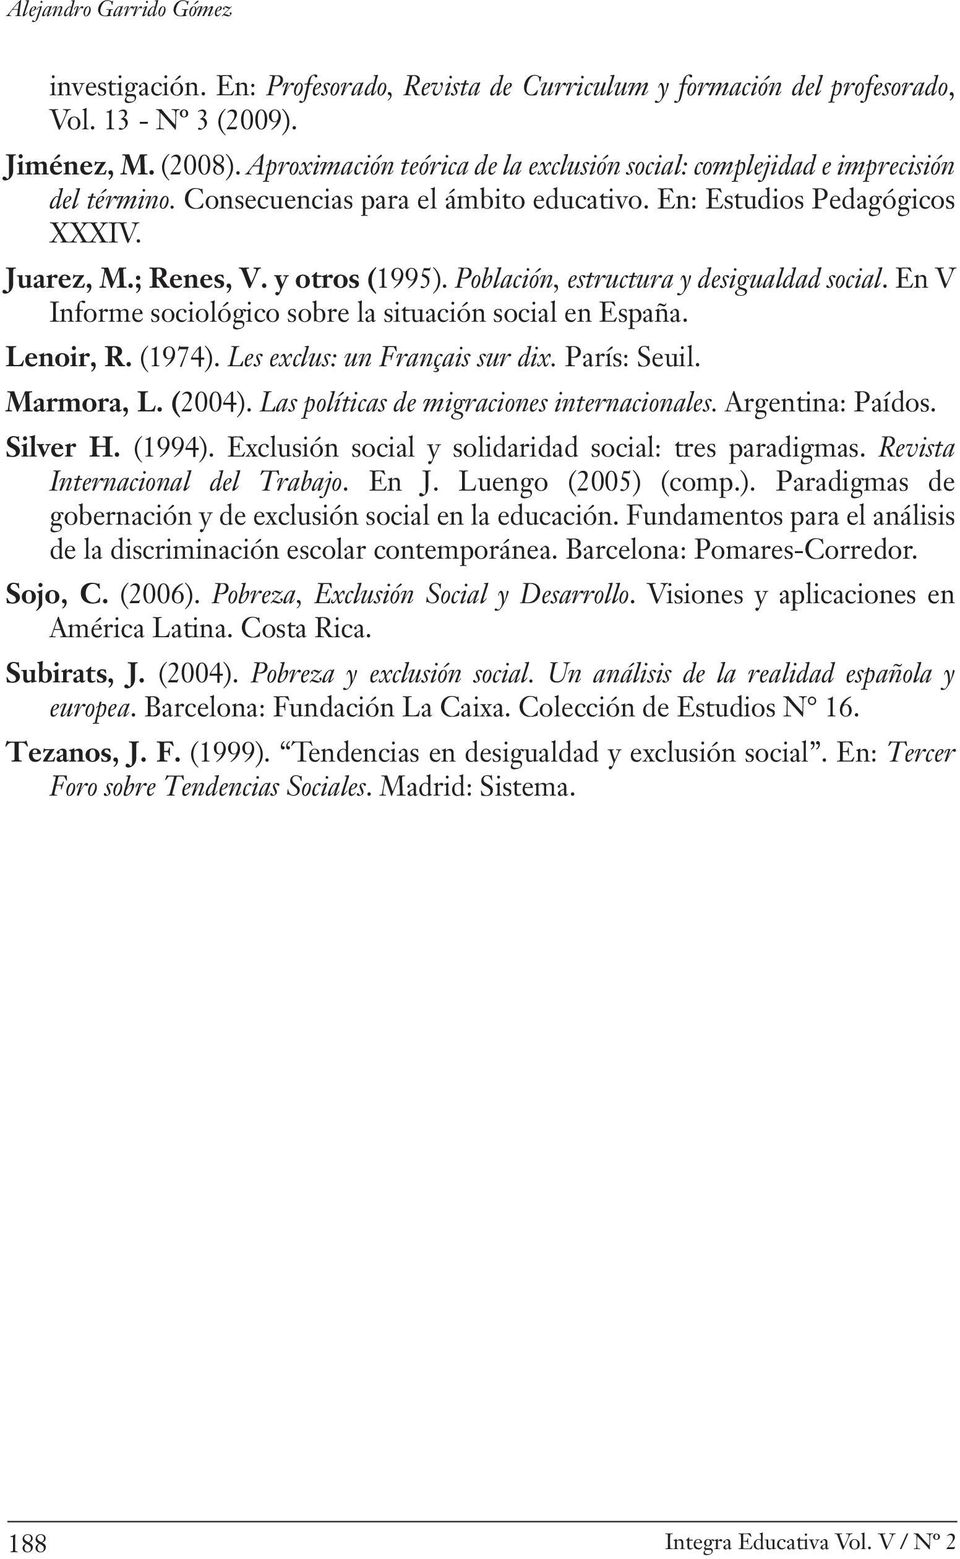 Población, estructura y desigualdad social. En V Informe sociológico sobre la situación social en España. Lenoir, R. (1974). Les exclus: un Français sur dix. París: Seuil. Marmora, L. (2004).